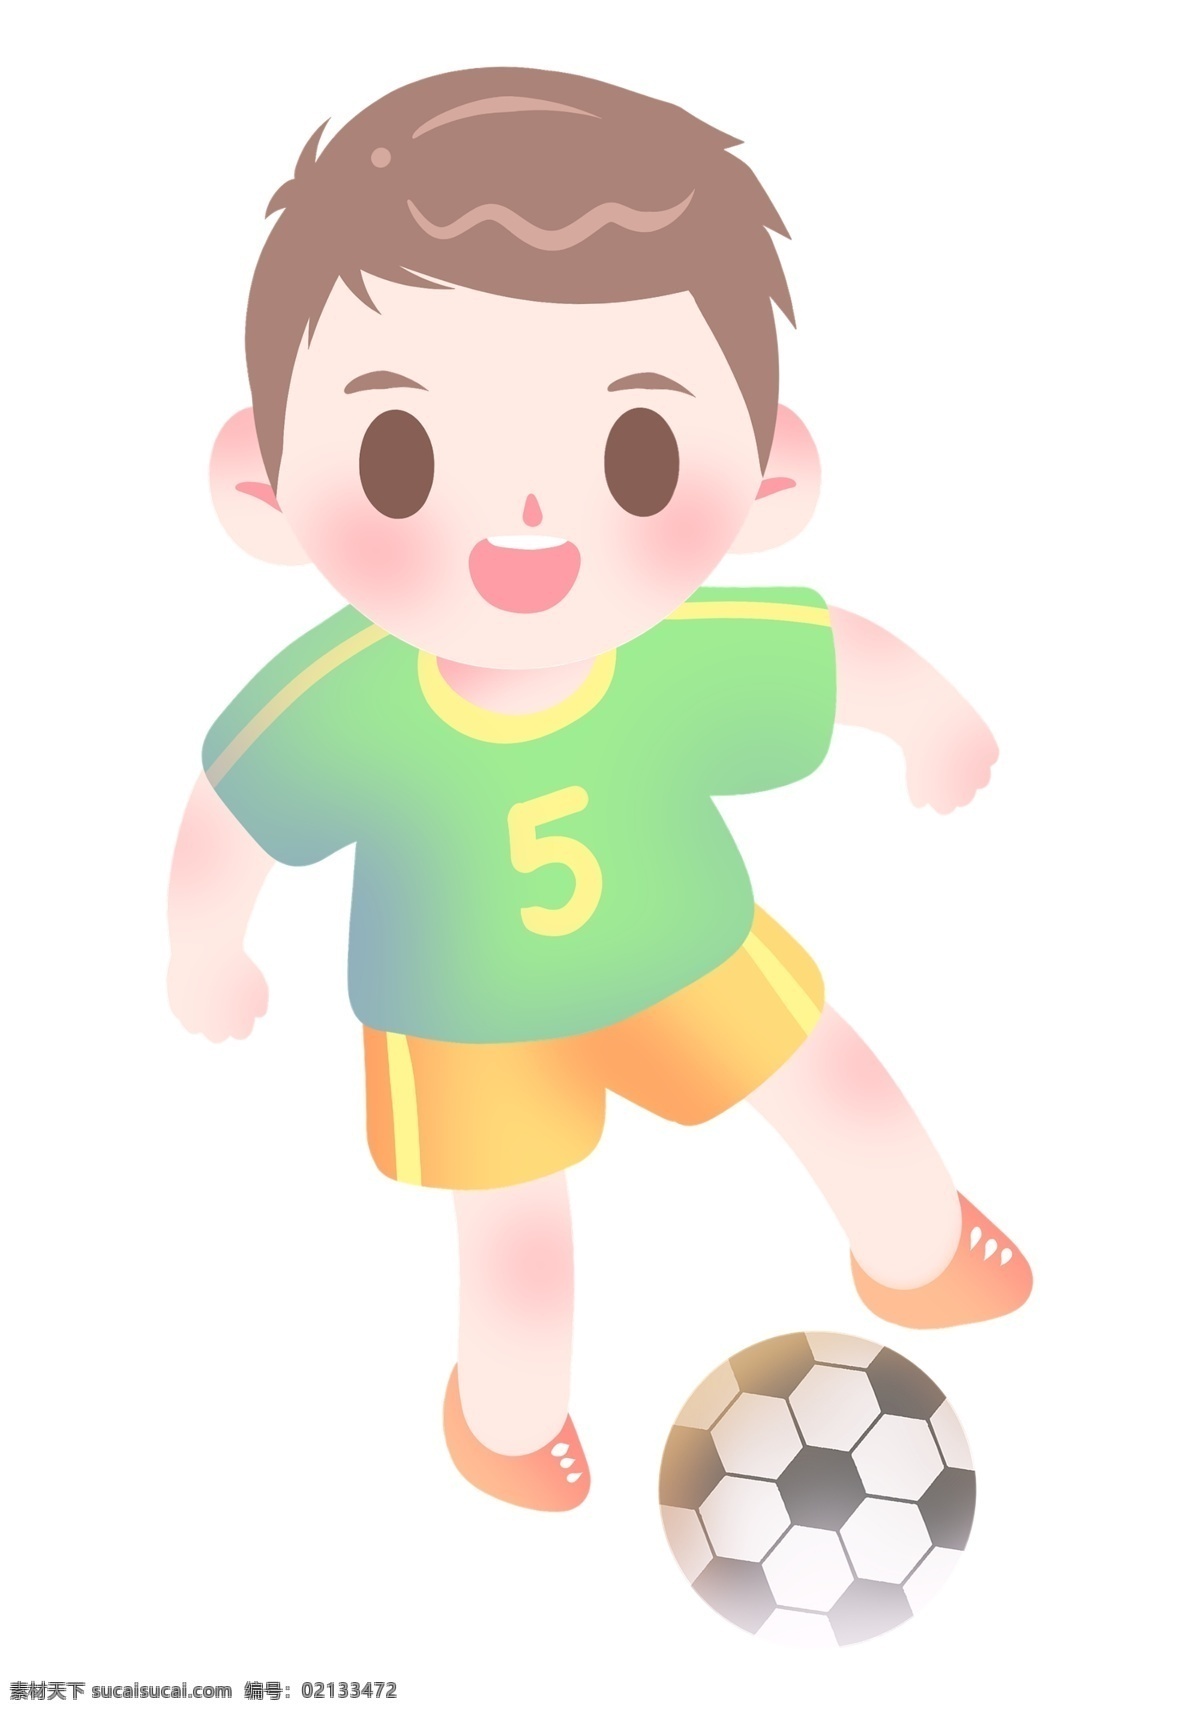 足球 运动 男孩 插画 卡通 小 踢球 足球运动 足球运动员 穿球服男孩 体育运动 踢足球男孩